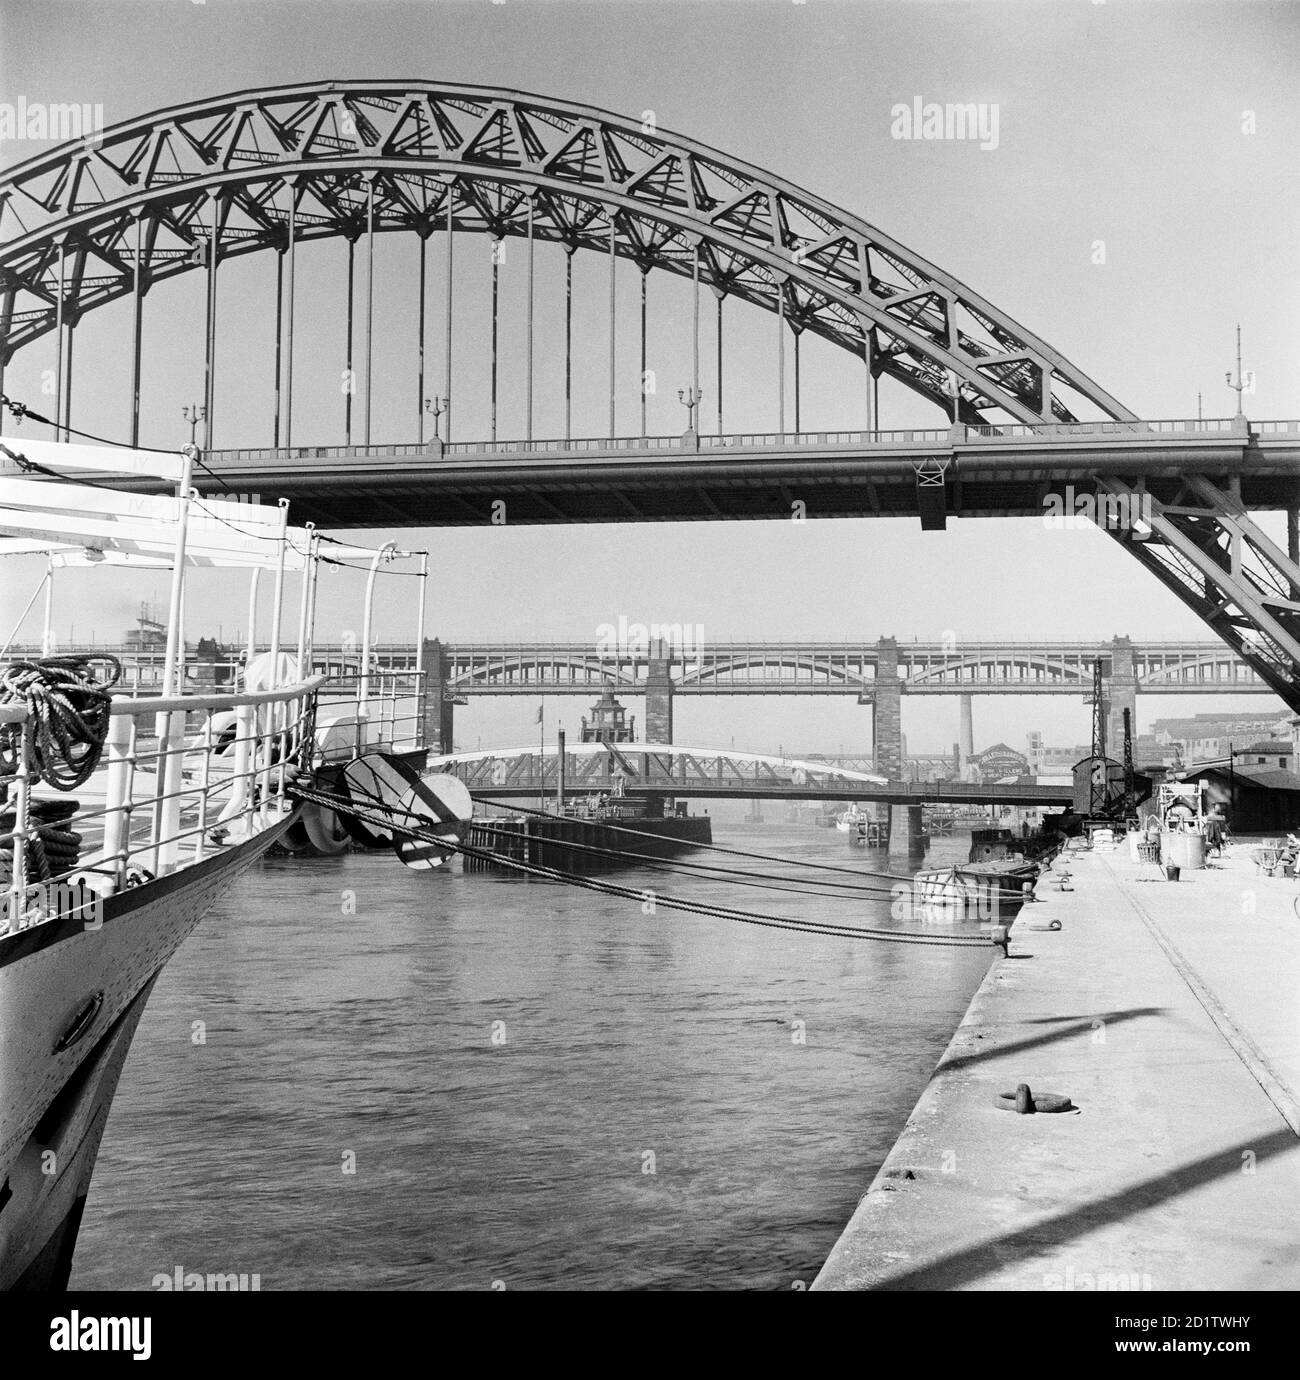 LES PONTS TYNE, Newcastle upon Tyne. Une vue depuis le quai de Newcastle du pont Tyne ouvert en 1928 par le roi George V. au loin, le pont Swing conçu par William Armstrong et le pont High Level conçu par Robert Stephenson sont visibles. Photographié en 1955 par Eric de Mare. Banque D'Images